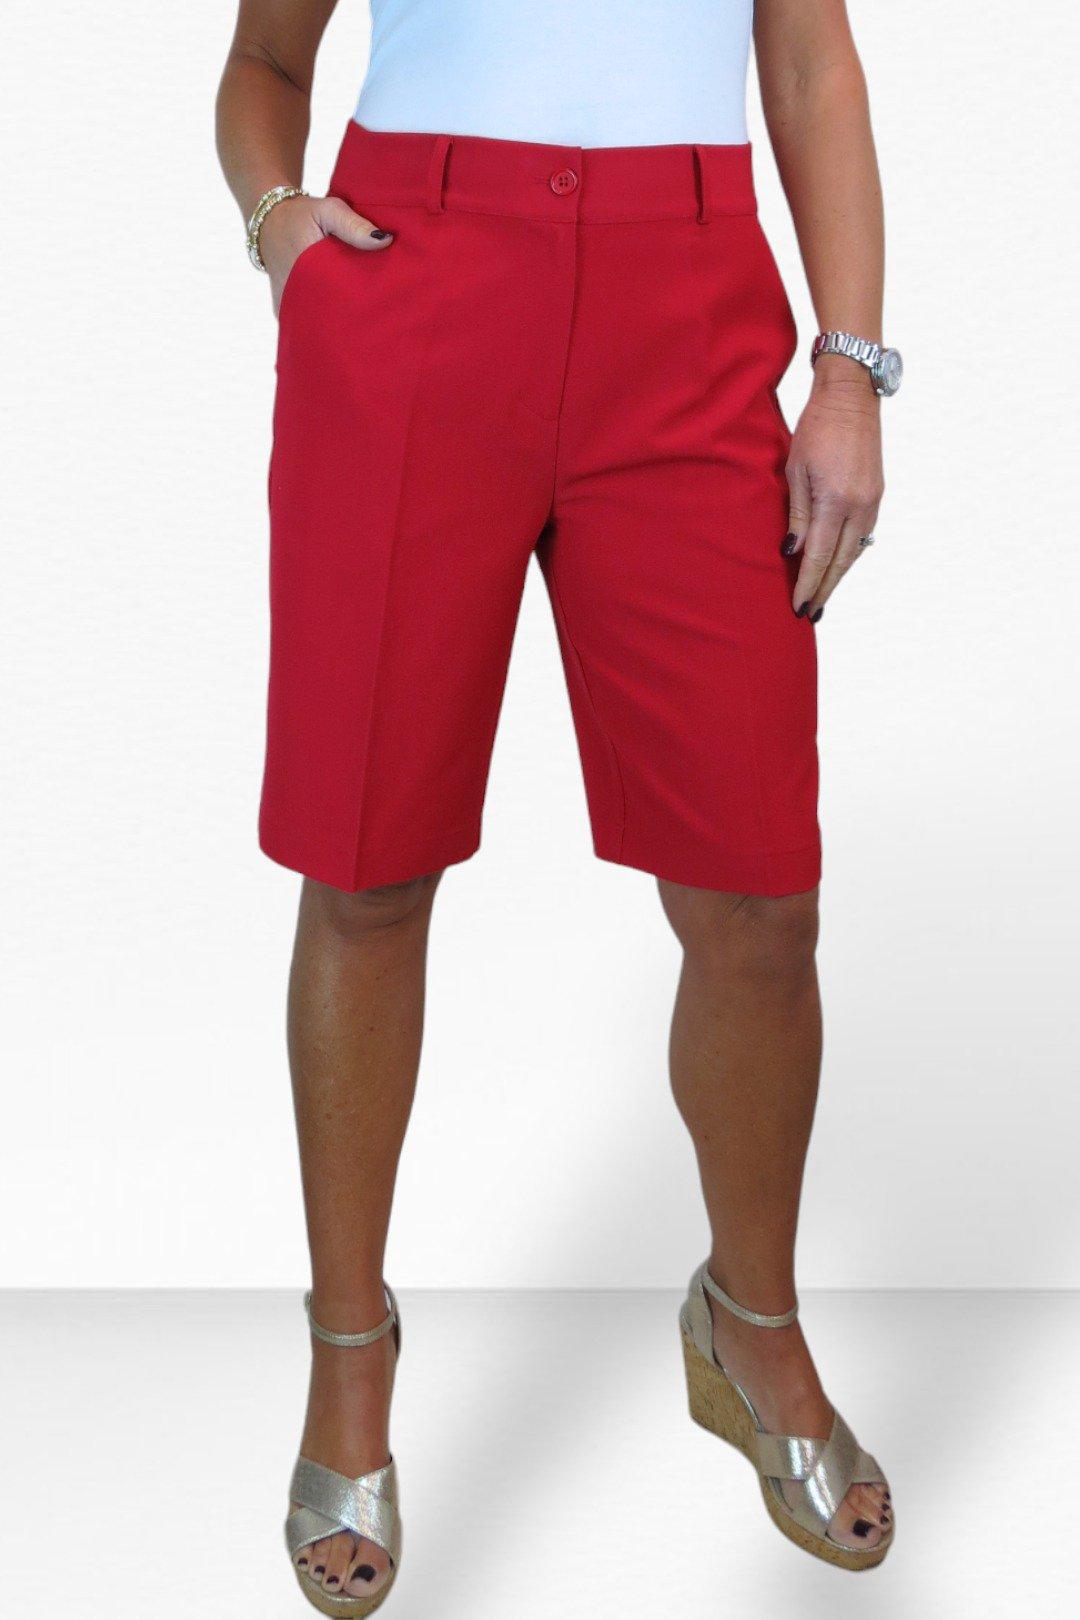 Ladiesshortshigh Waist Skinny Summer Shorts For Women - Chic A-line Cotton  Blend